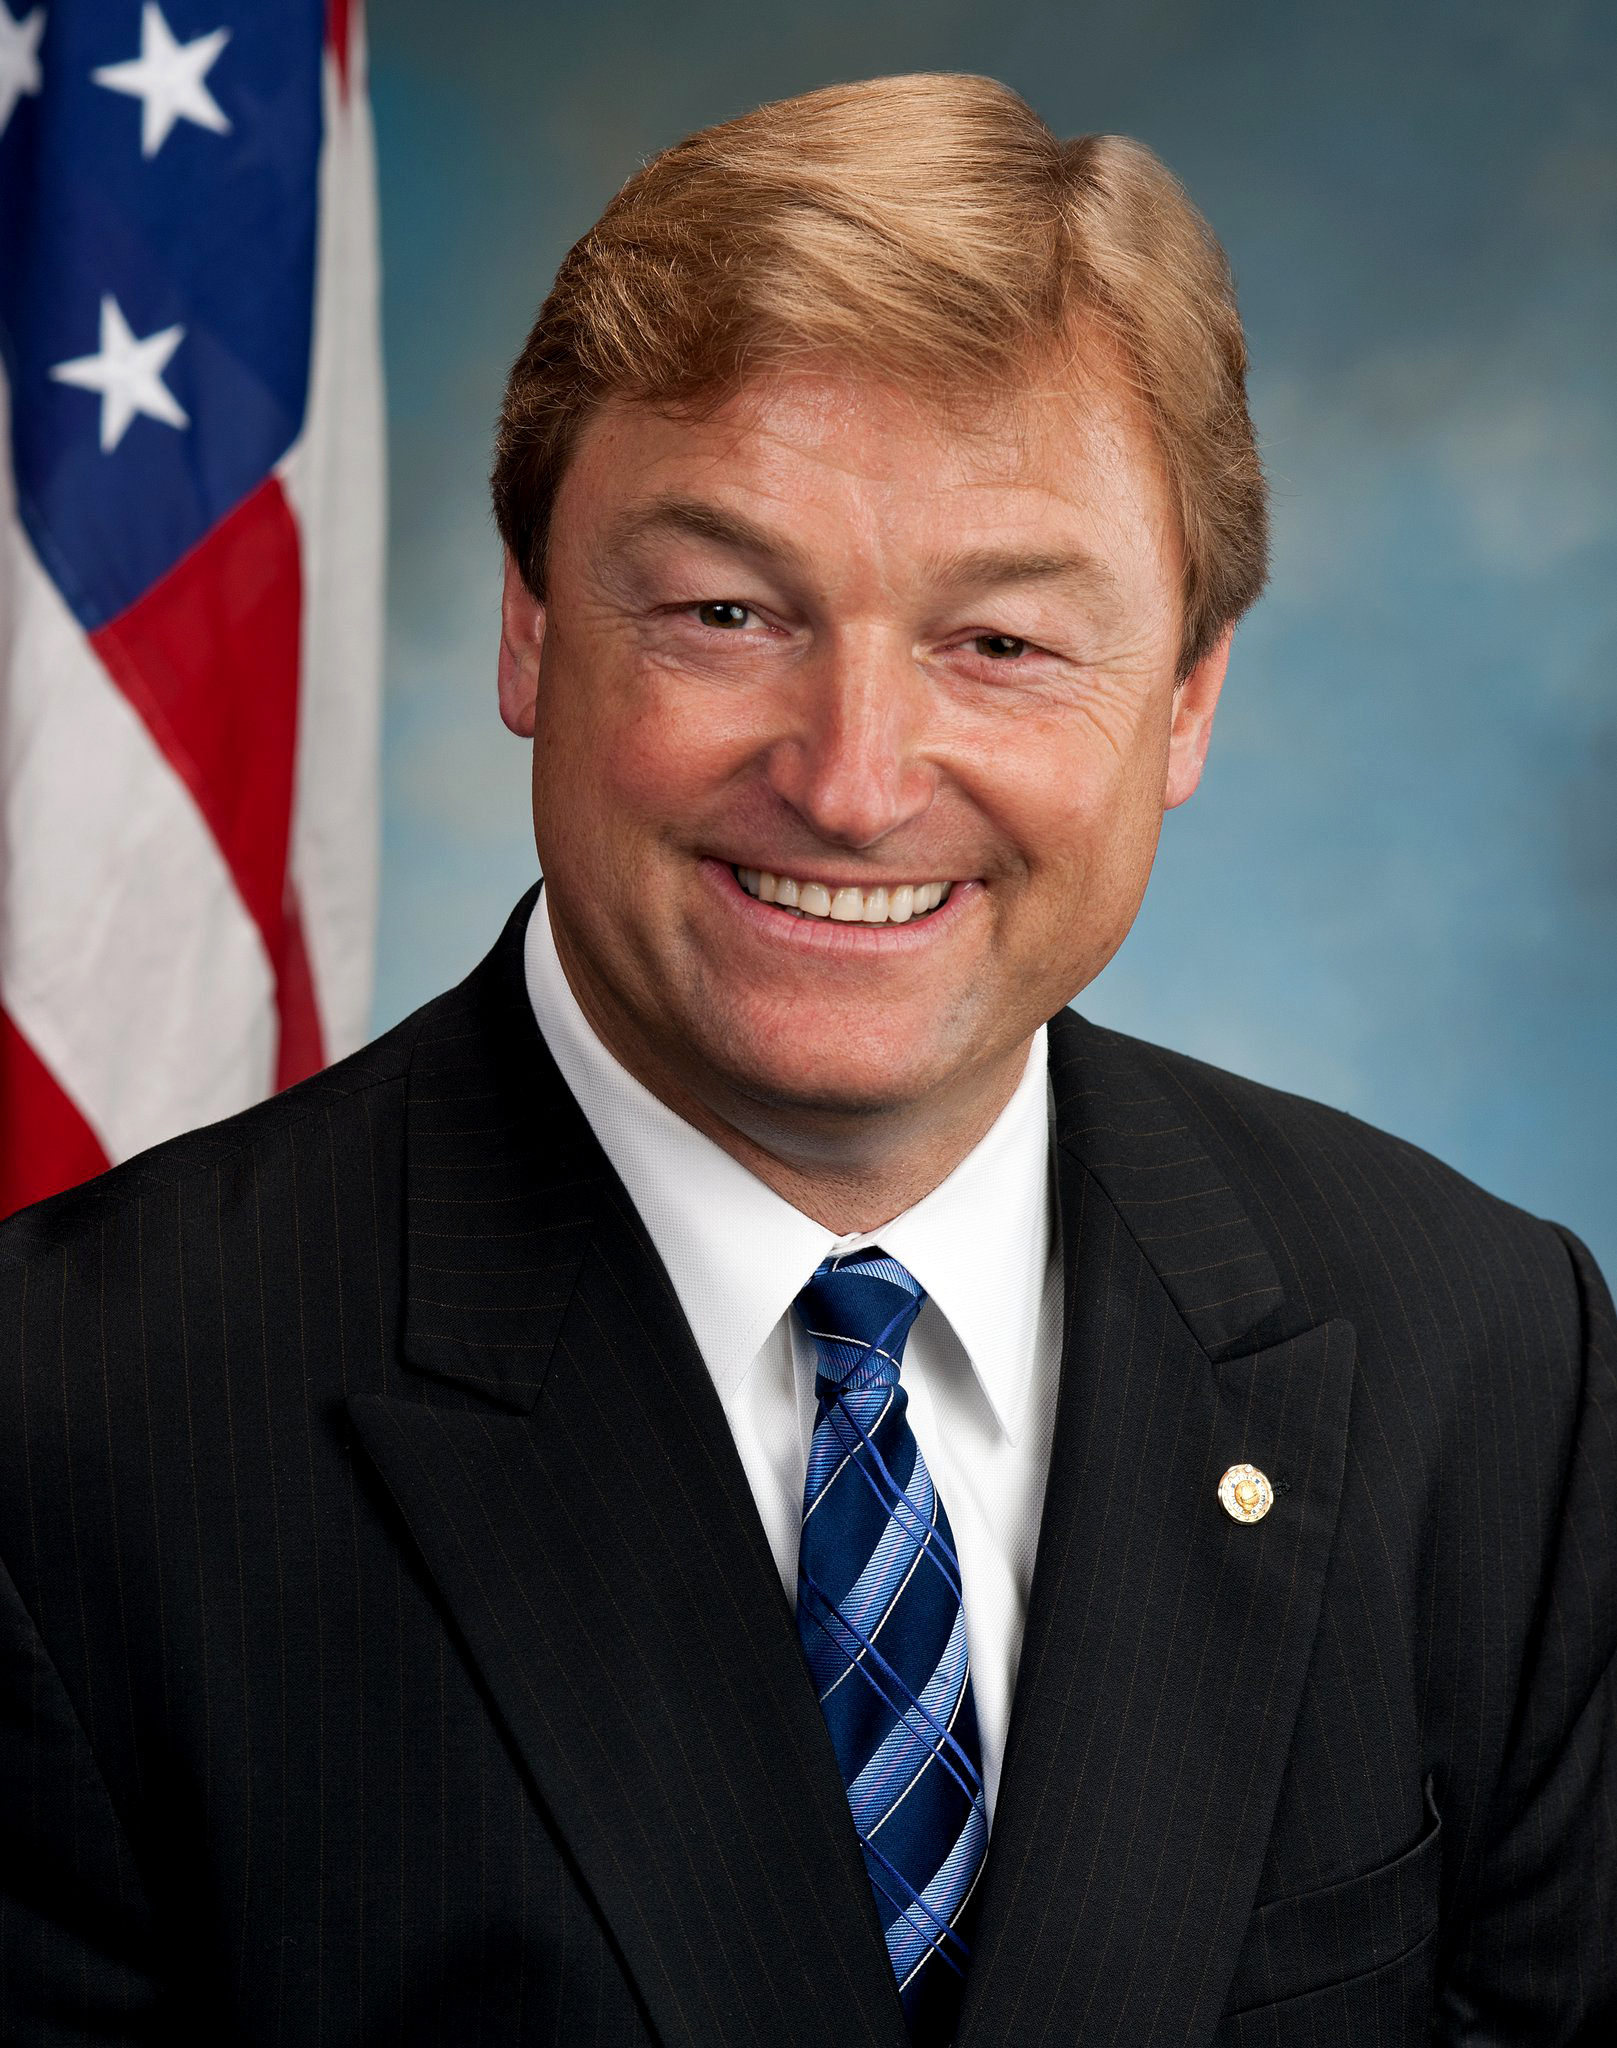 Dean_Heller,_Official_Senate_Portrait,_112th_Congress.jpg